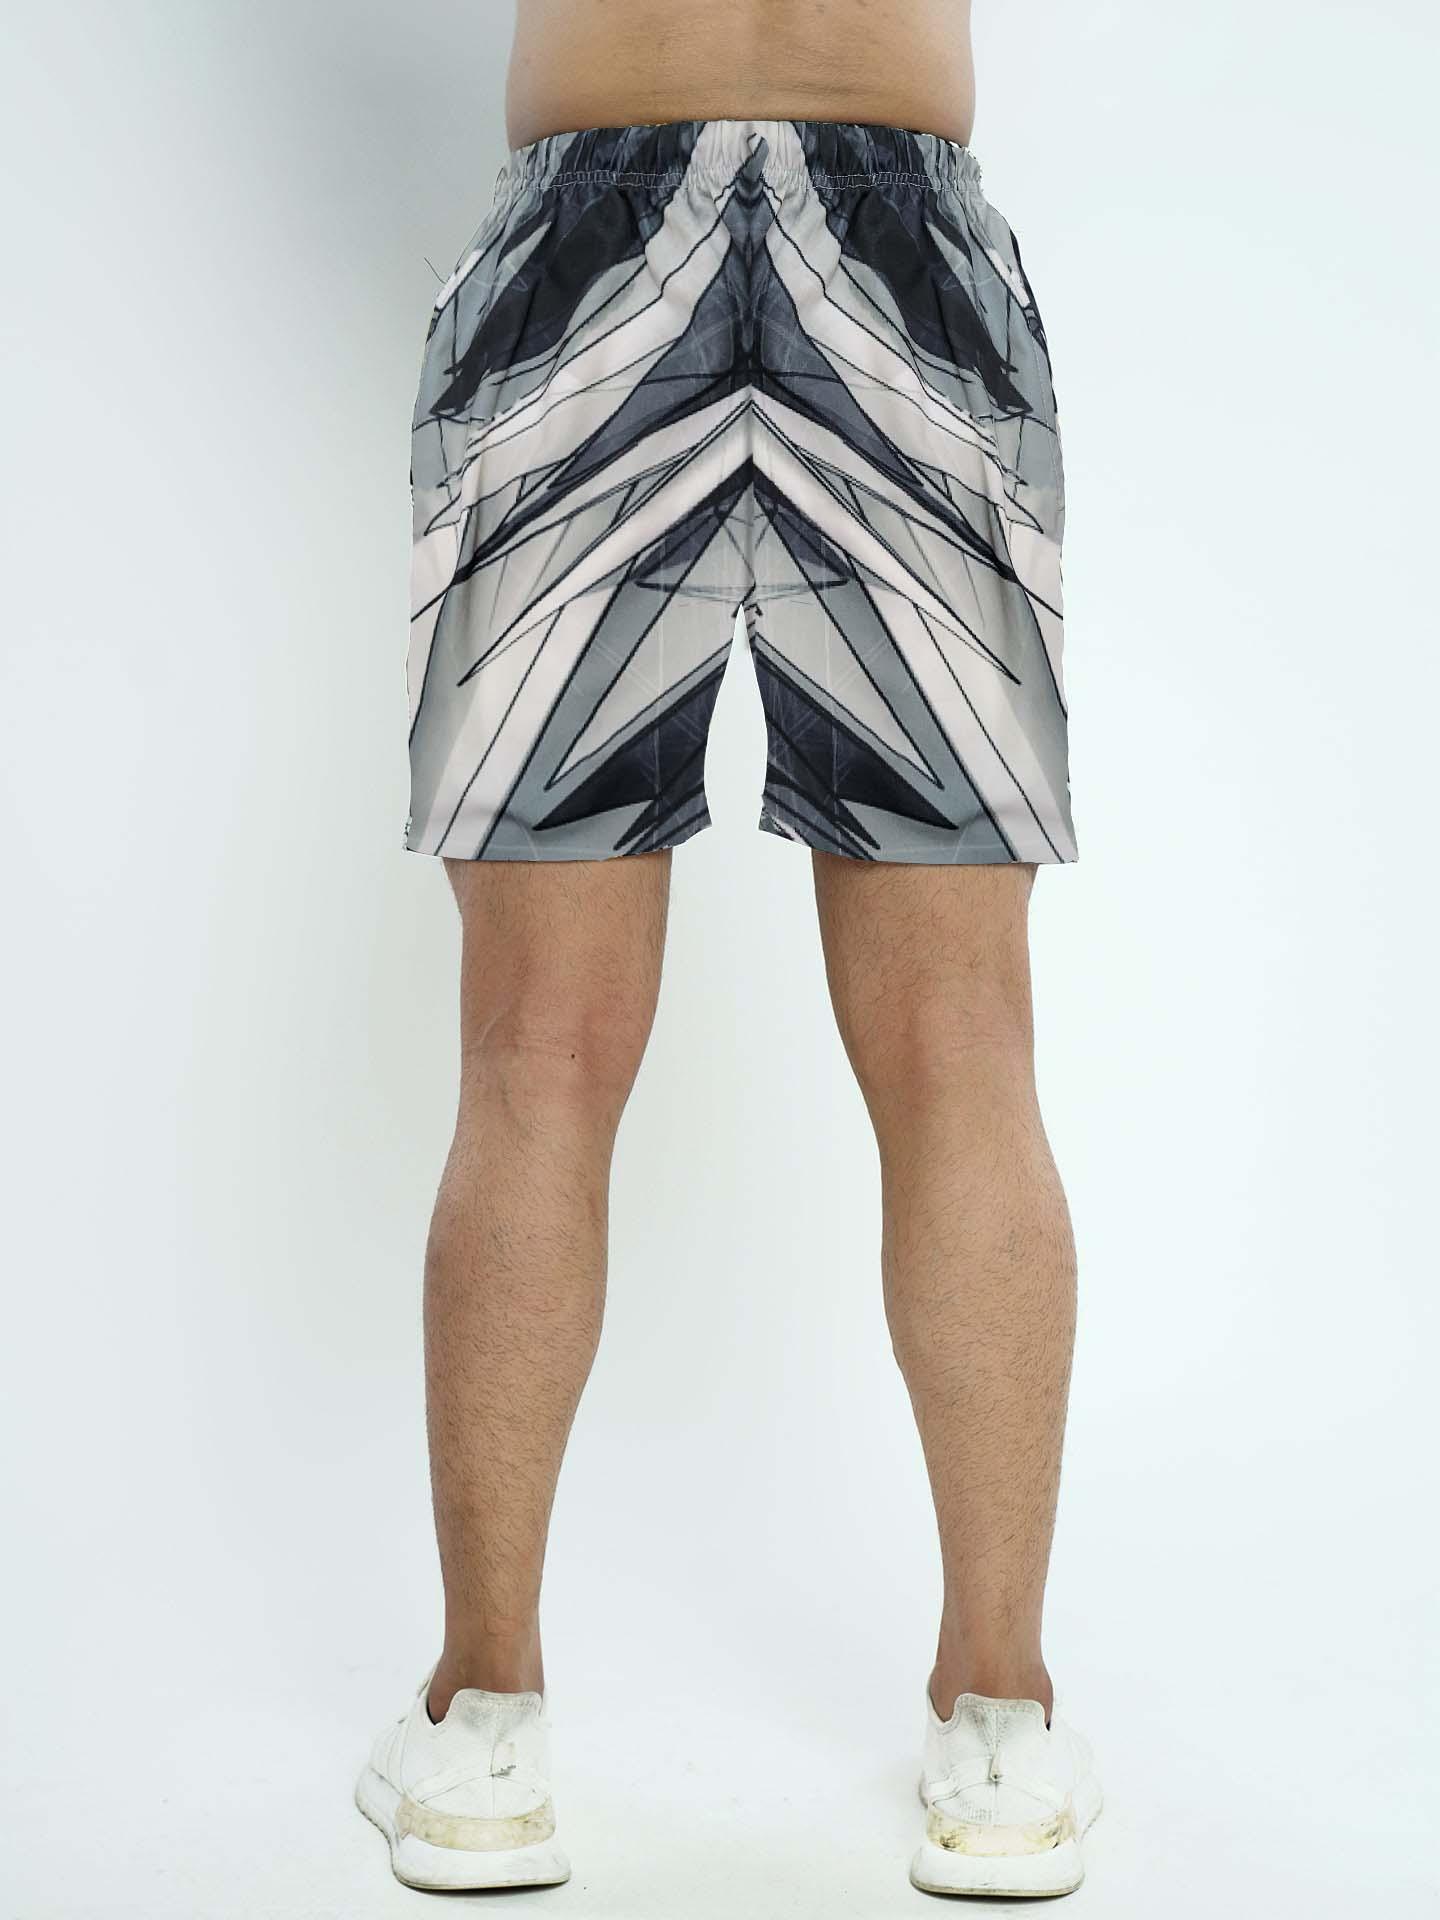 Shine Glass Camo Shorts - Sale